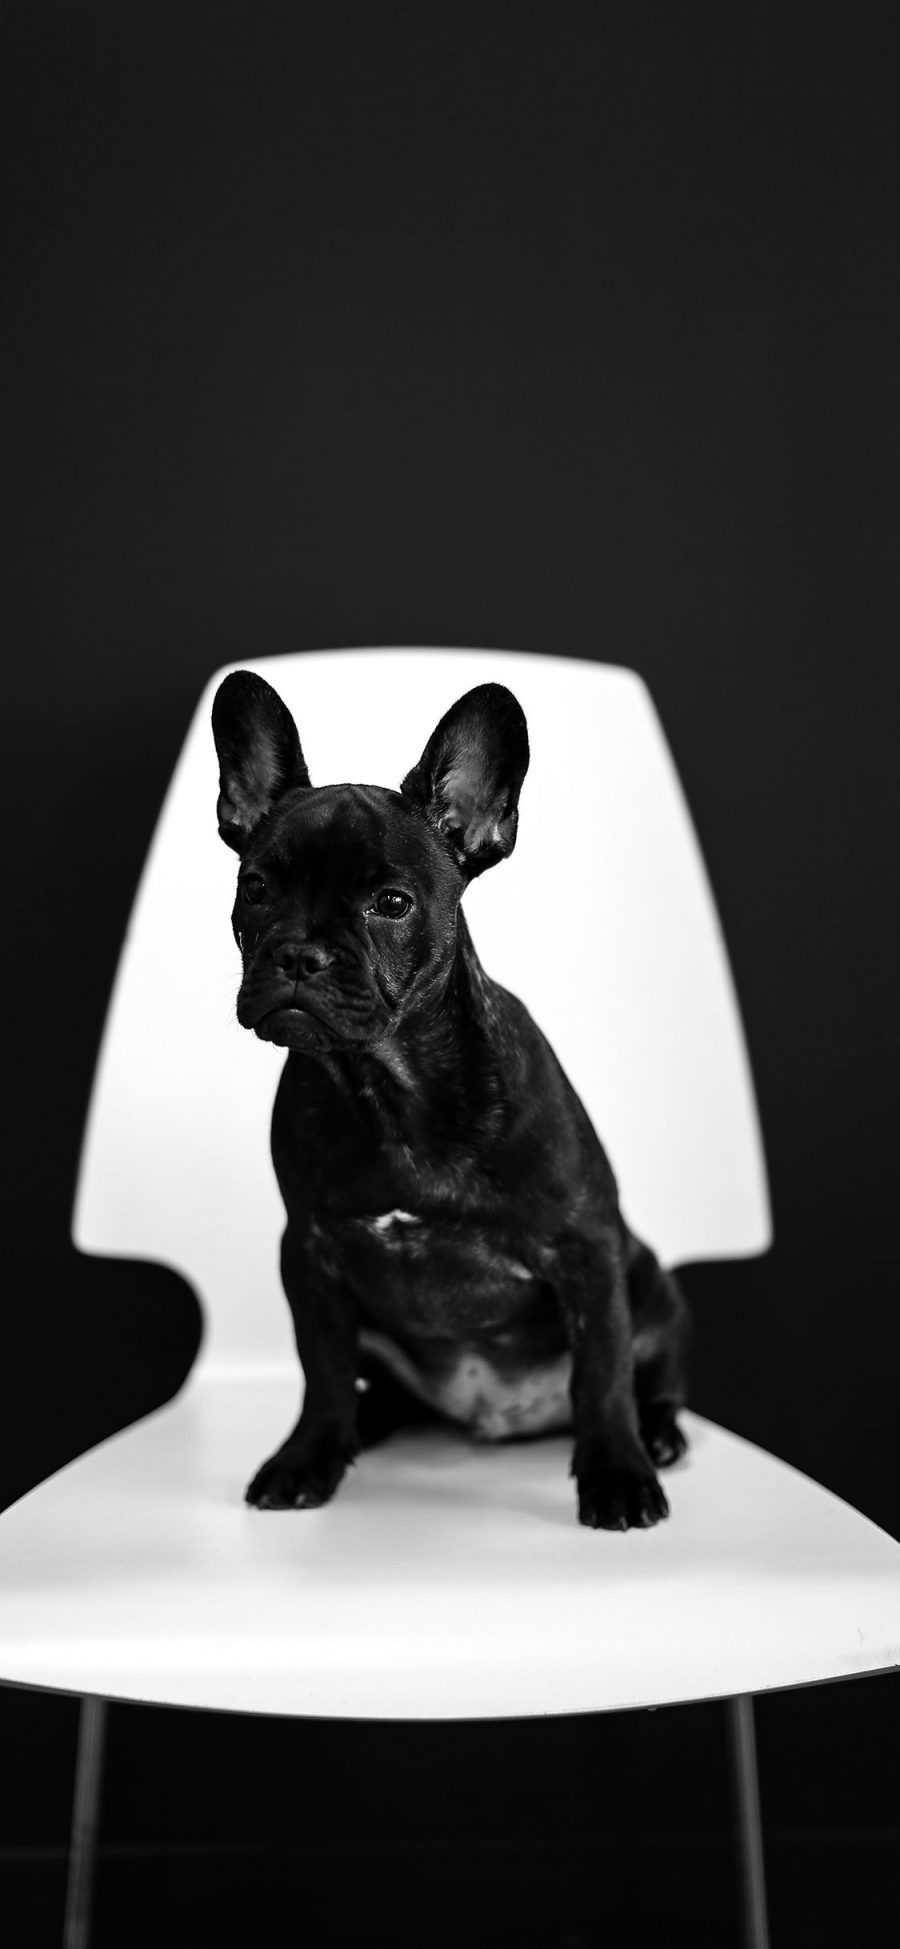 [2436×1125]斗牛 椅子 宠物 黑狗 苹果手机壁纸图片